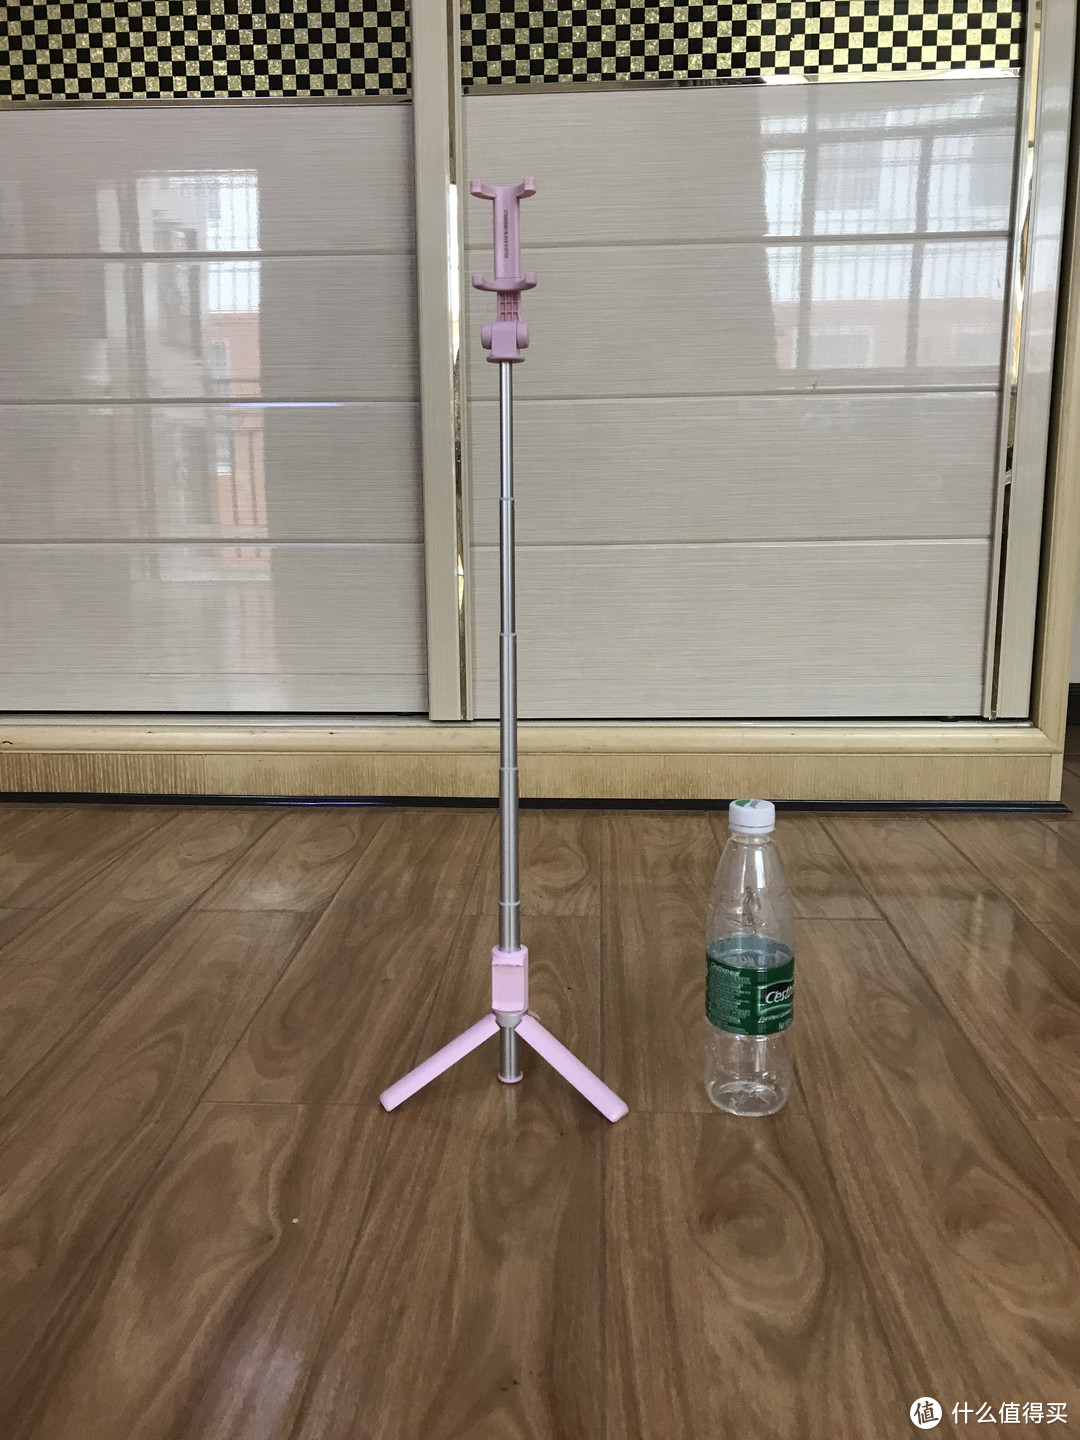 #晒单大晒#华为 荣耀AF15蓝牙无线自拍杆粉色款开箱，附小米自拍杆简单对比